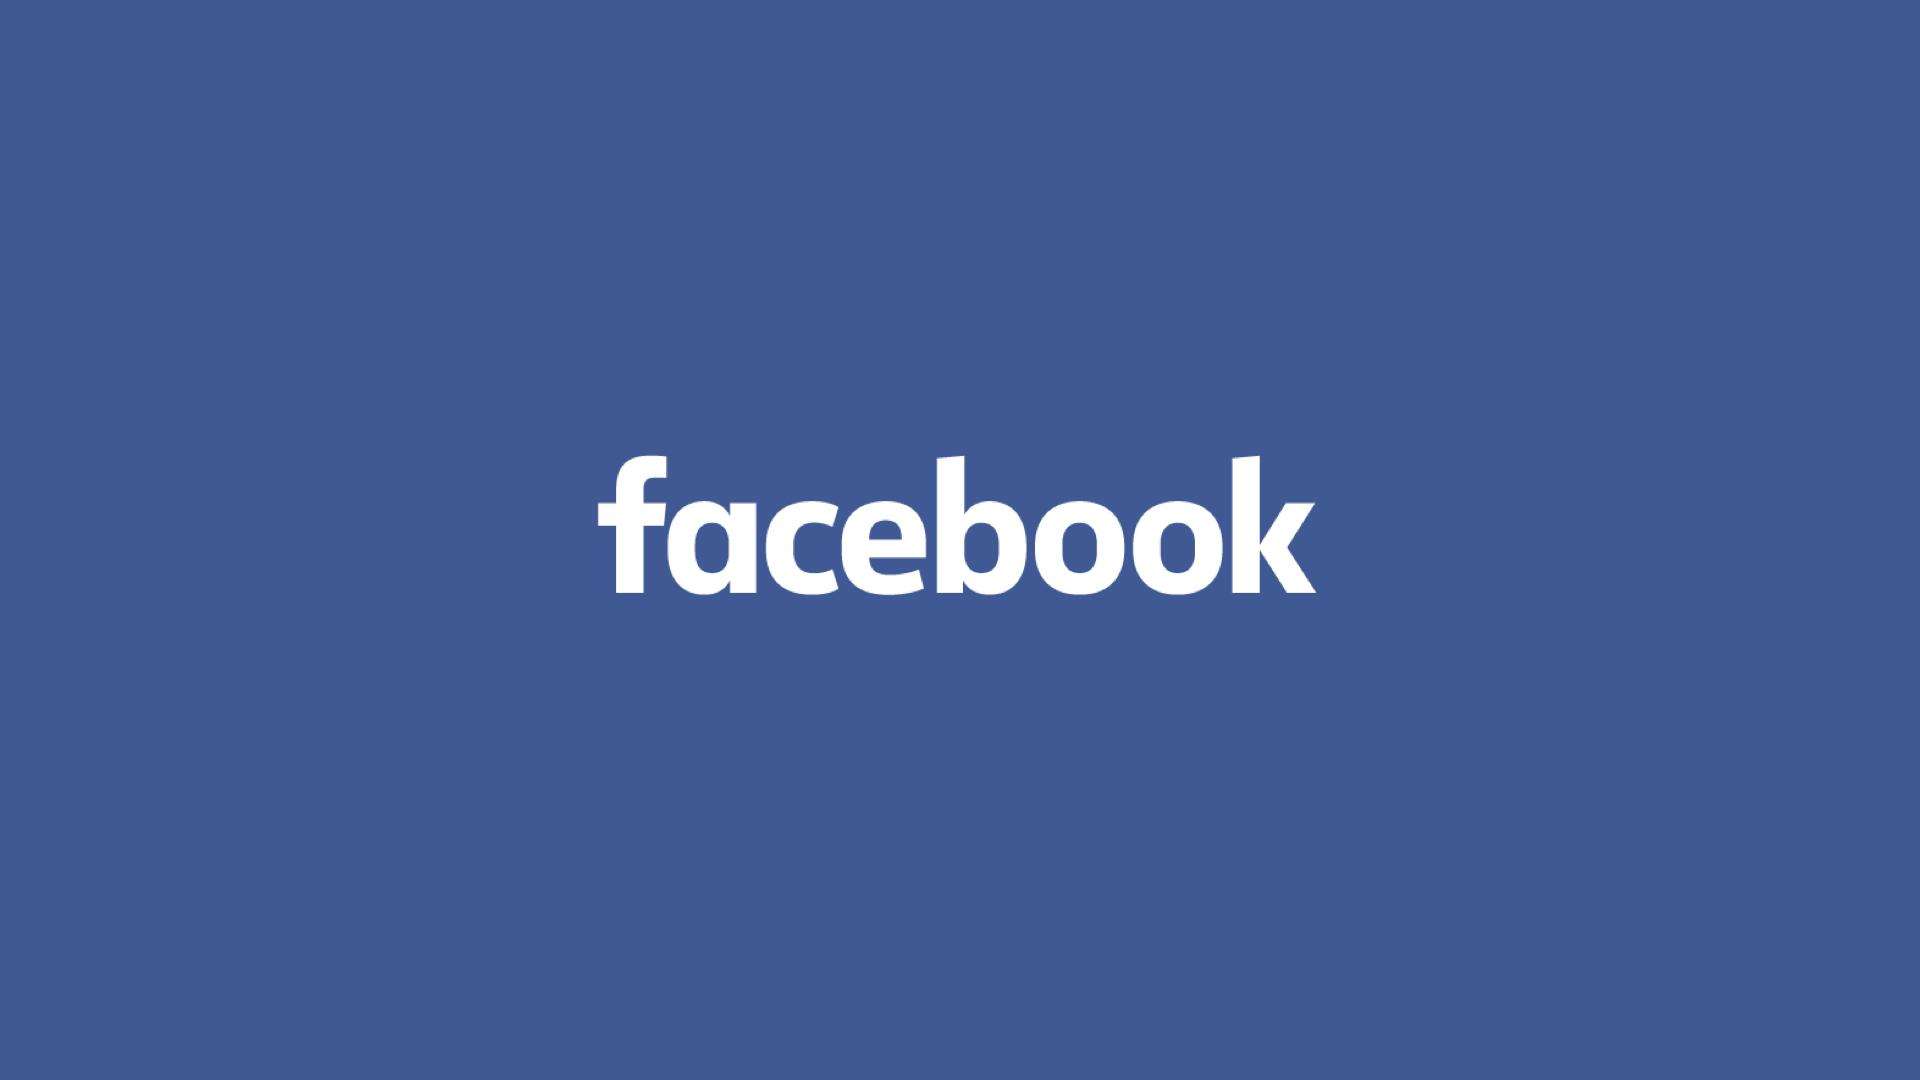 Facebook ओवरसीज बोर्ड ने डोनाल्ड ट्रम्प बैन को मंच से हटा दिया, वापसी के लिए 6 महीने का समय निर्धारित किया